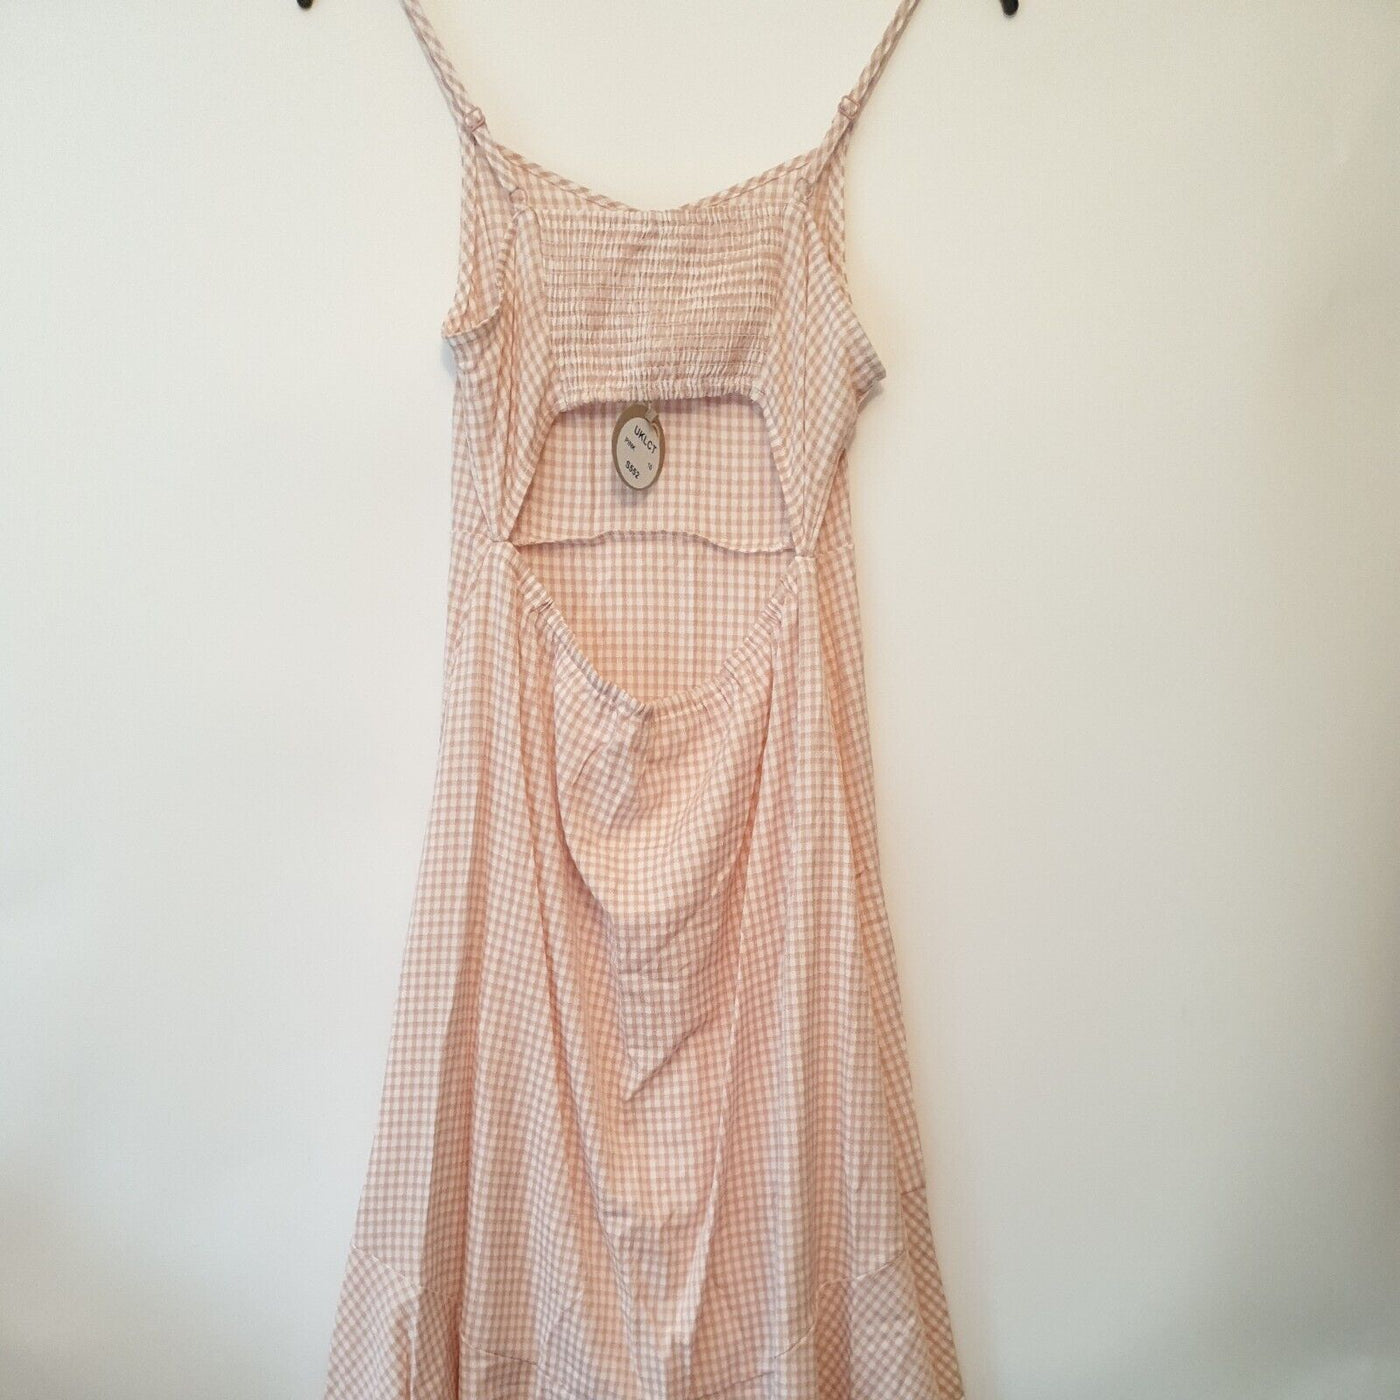 Apricot Gingham Pink High Low Hem Dress. Open Back. Size 14 ****V233